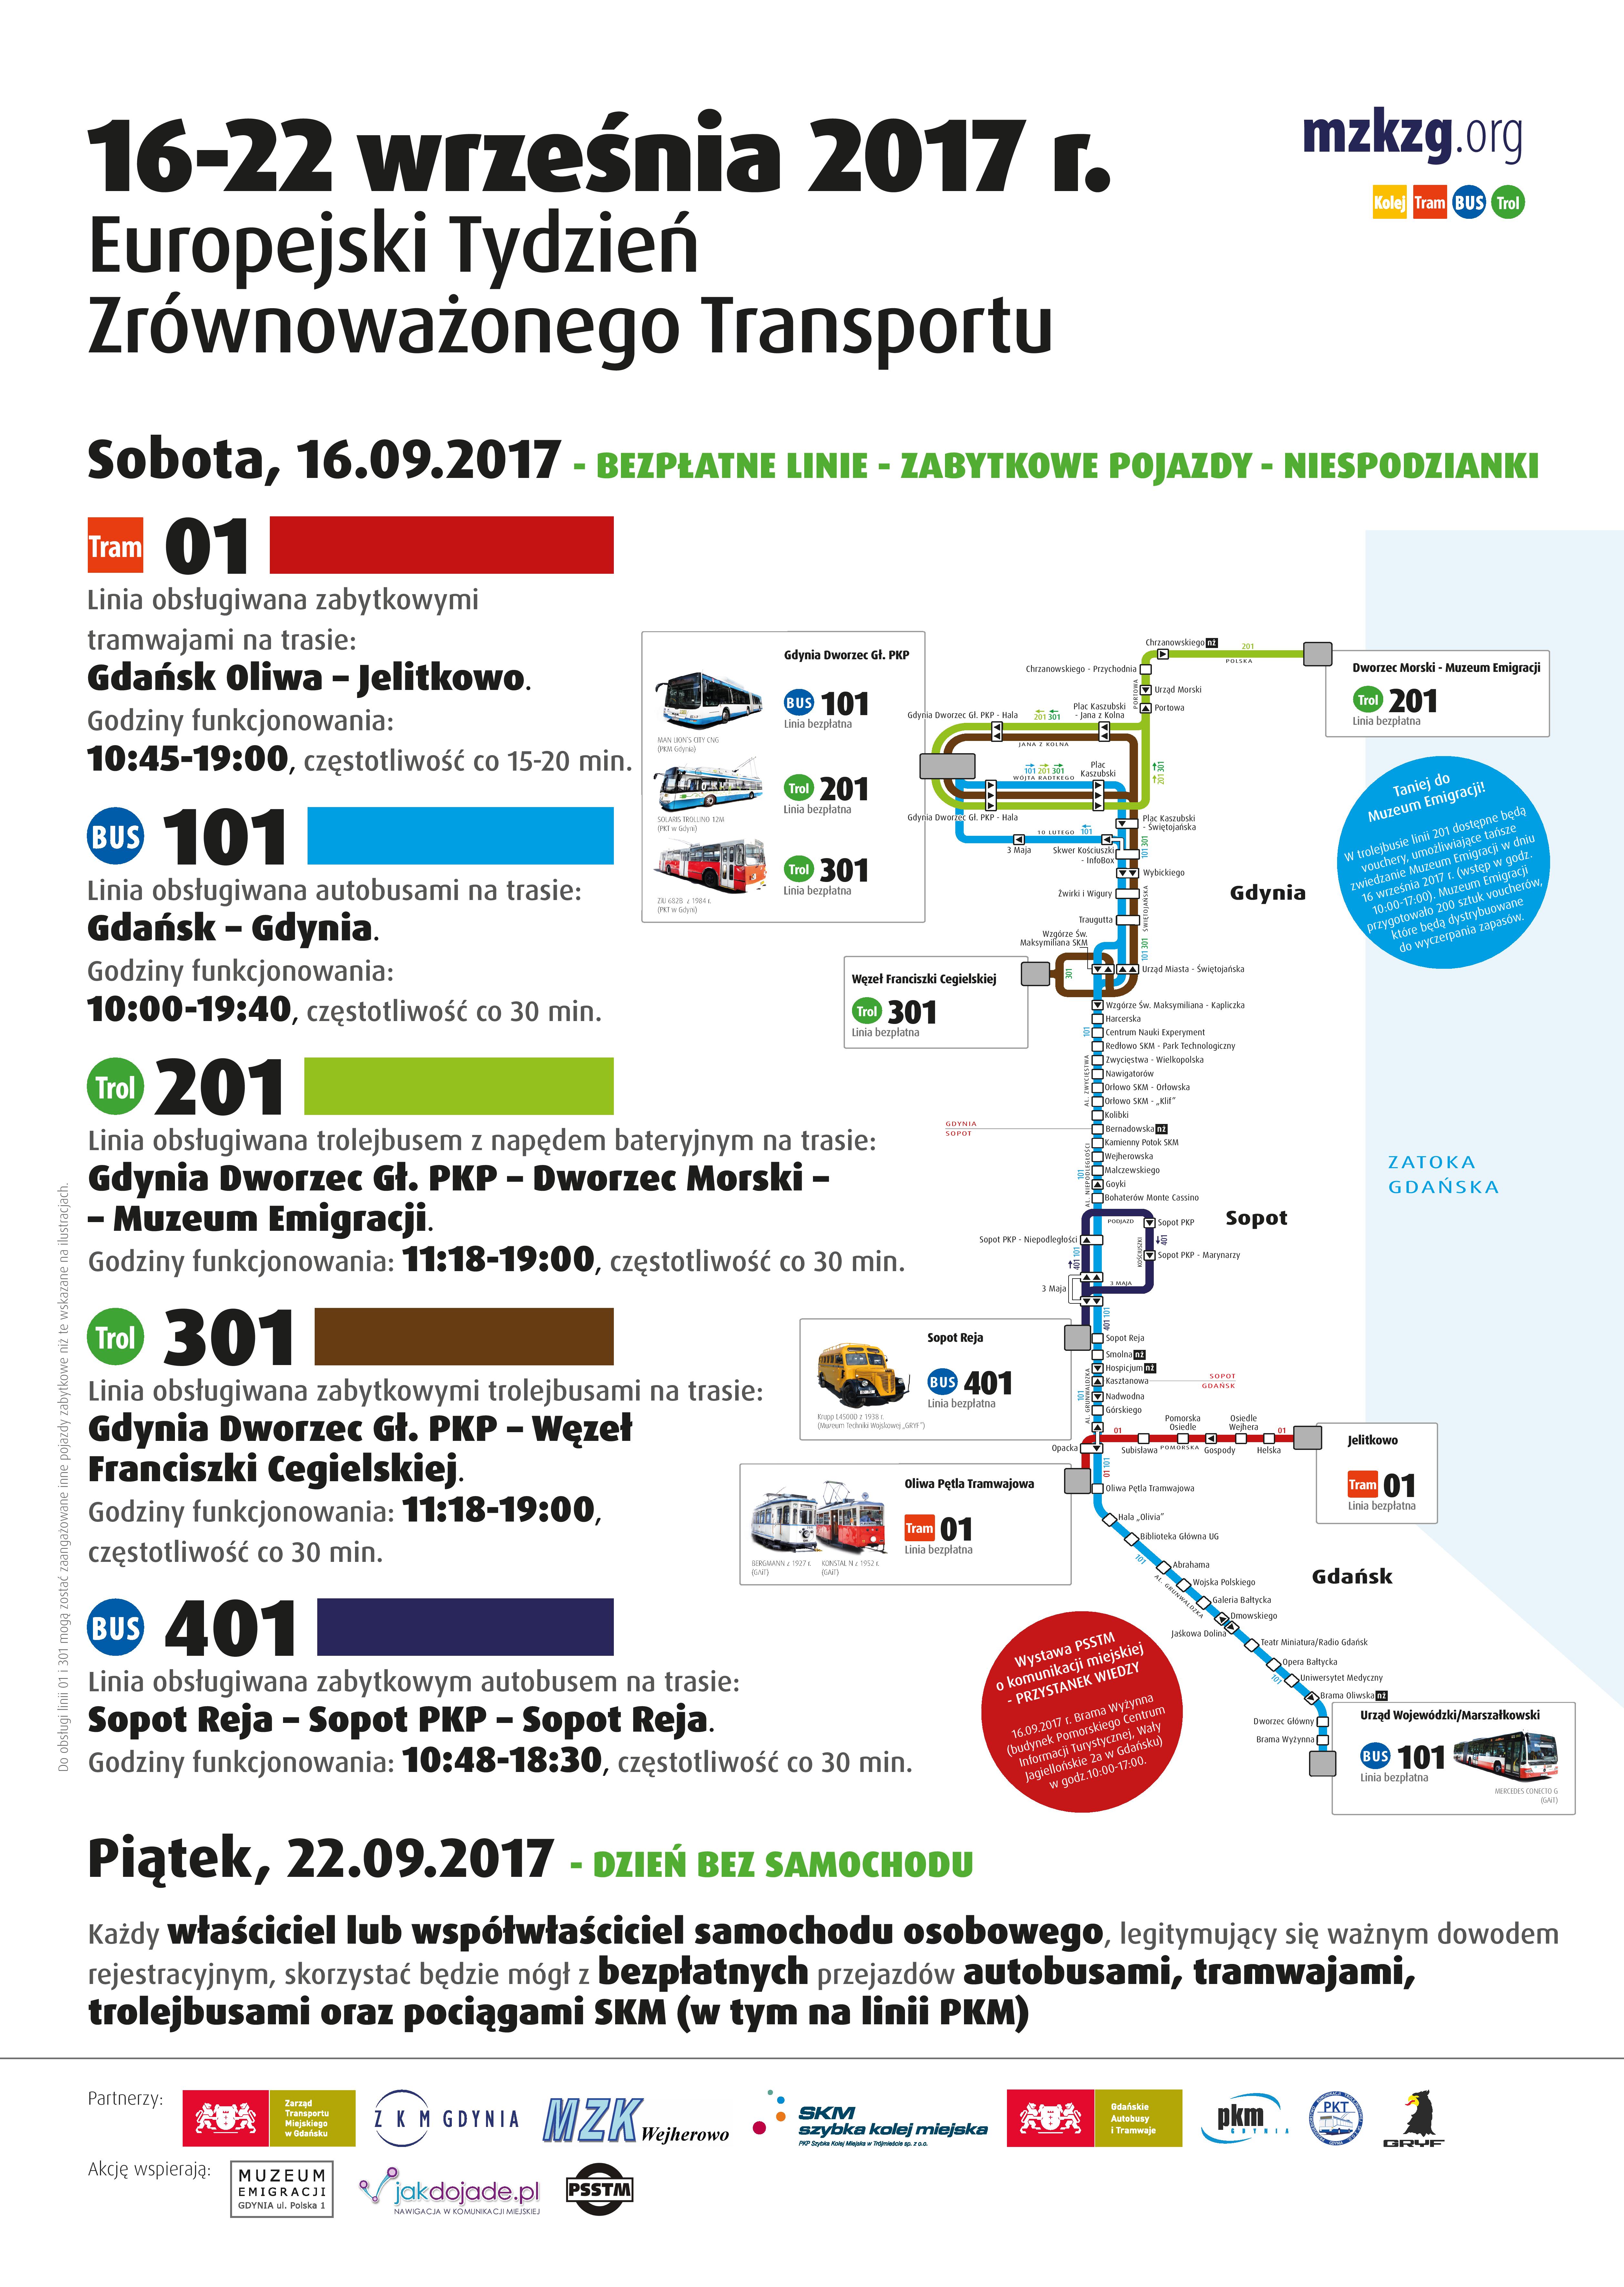 16-22 września – Europejski Tydzień Zrównoważonego Transportu